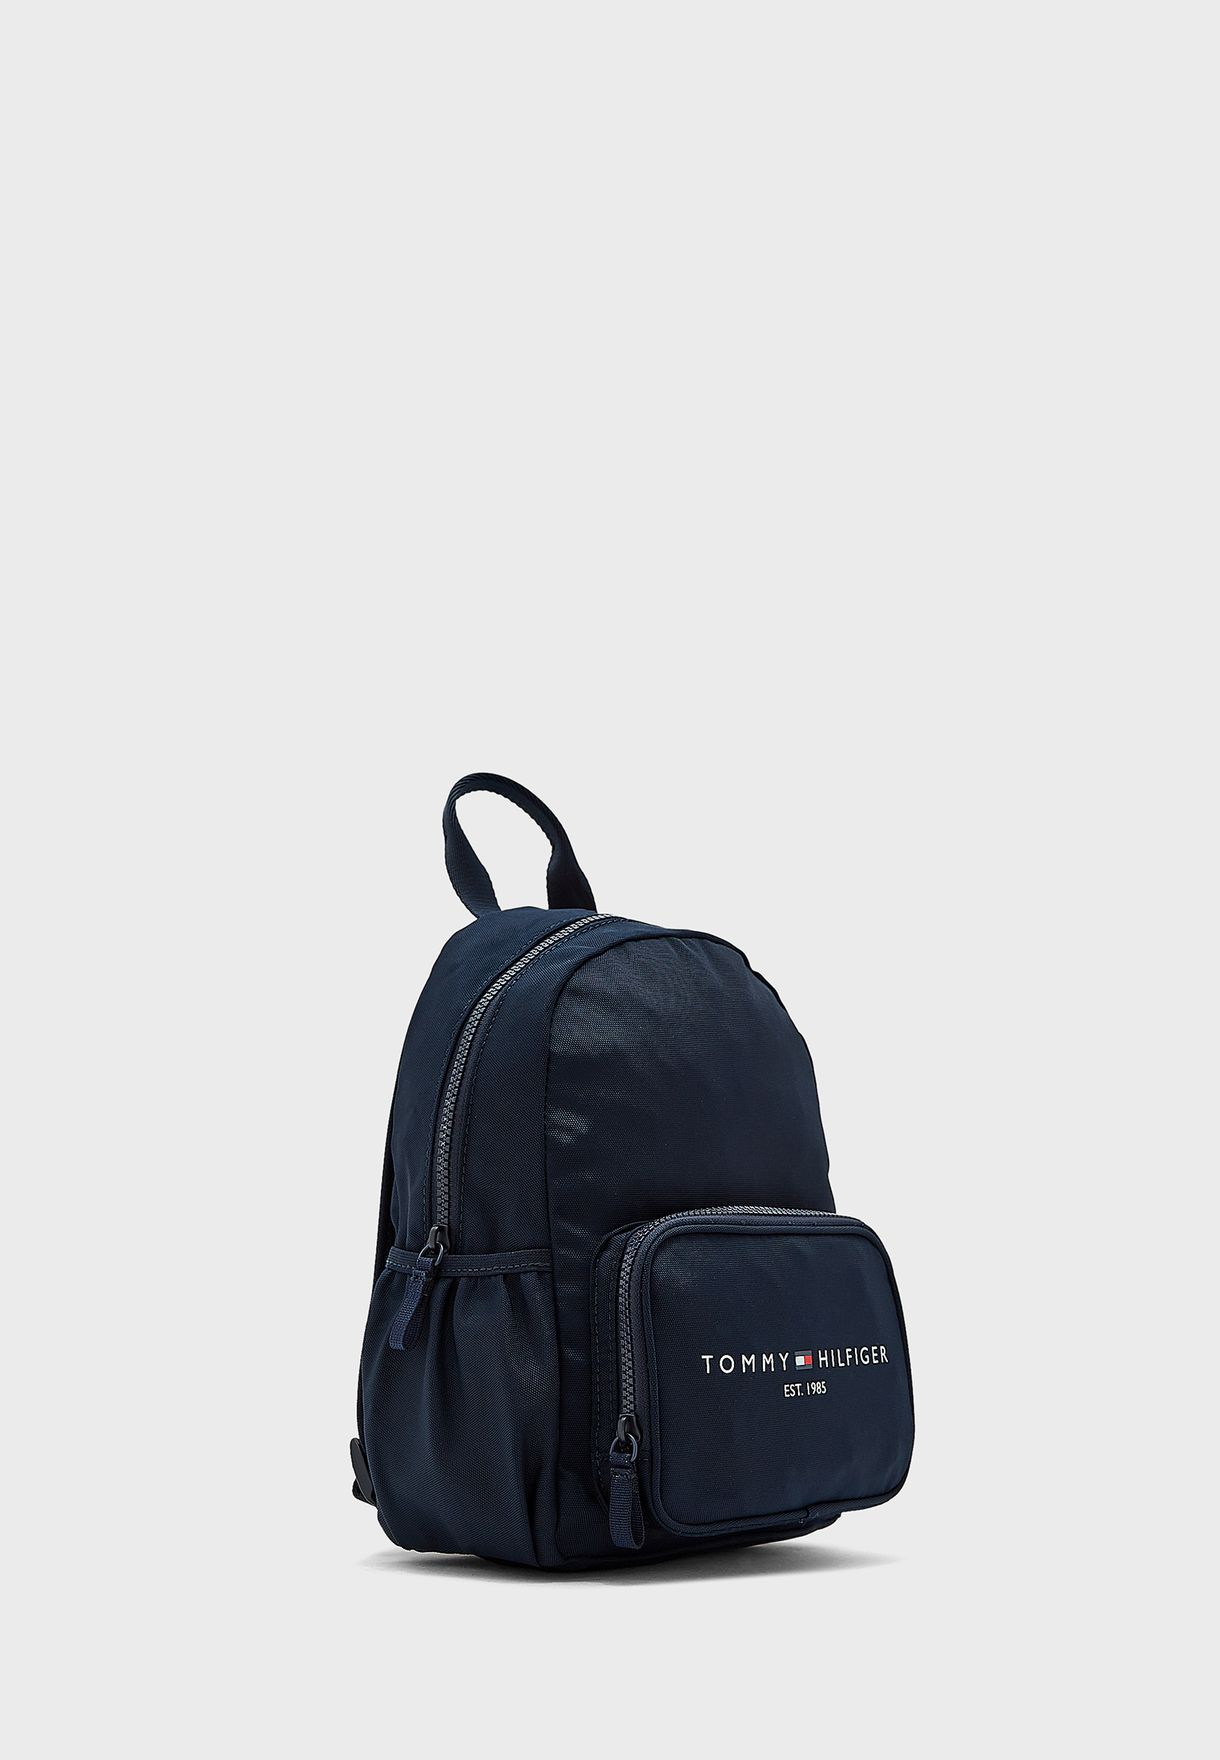 Kids Essential Backpack